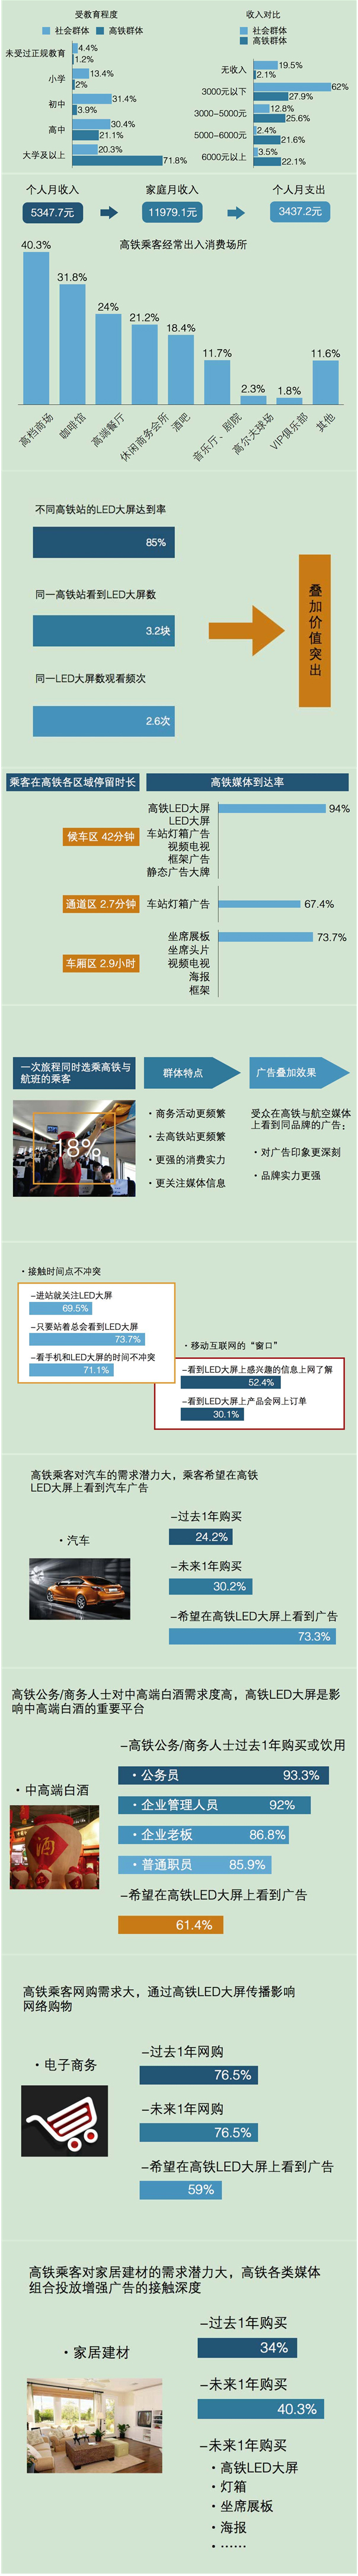 数据解析中国高铁成就及高铁媒体价值 4.jpg